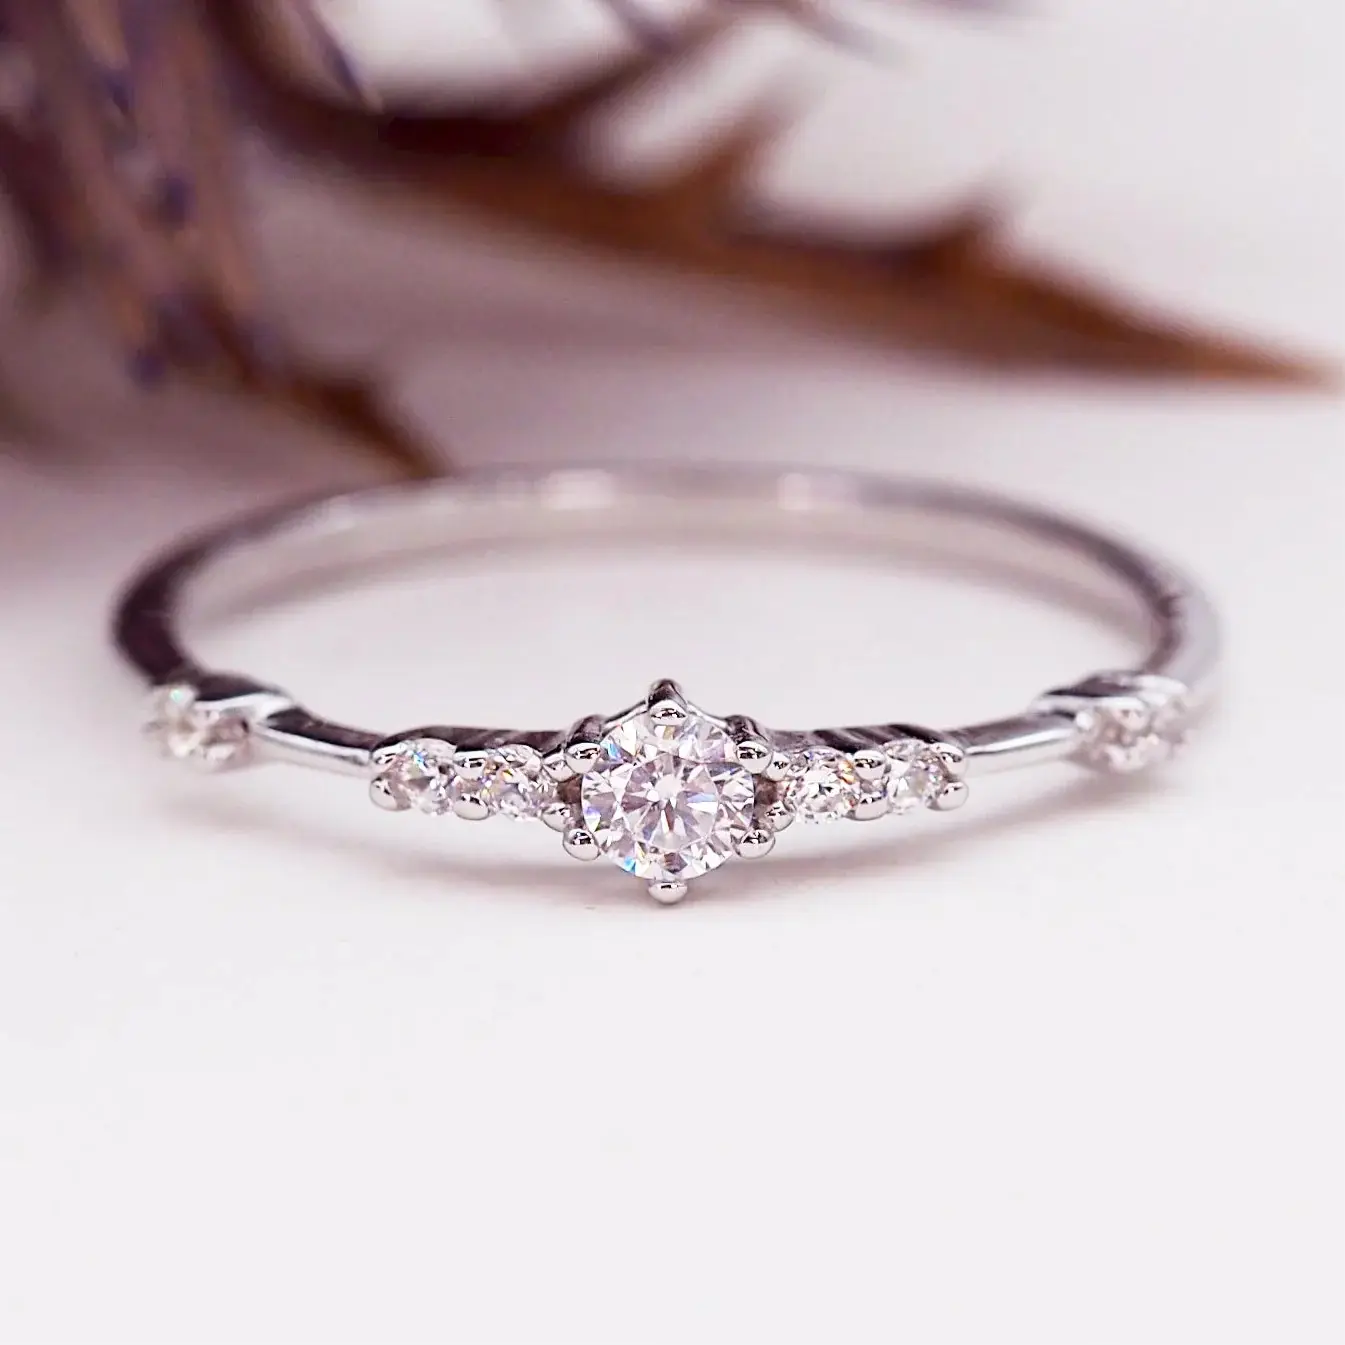 คุณภาพสูงMoissaniteหินแหวนเงินสเตอร์ลิง925หมั้นงานแต่งงานแหวนนิรันดร์triple bandออกแบบฟรีขนาด